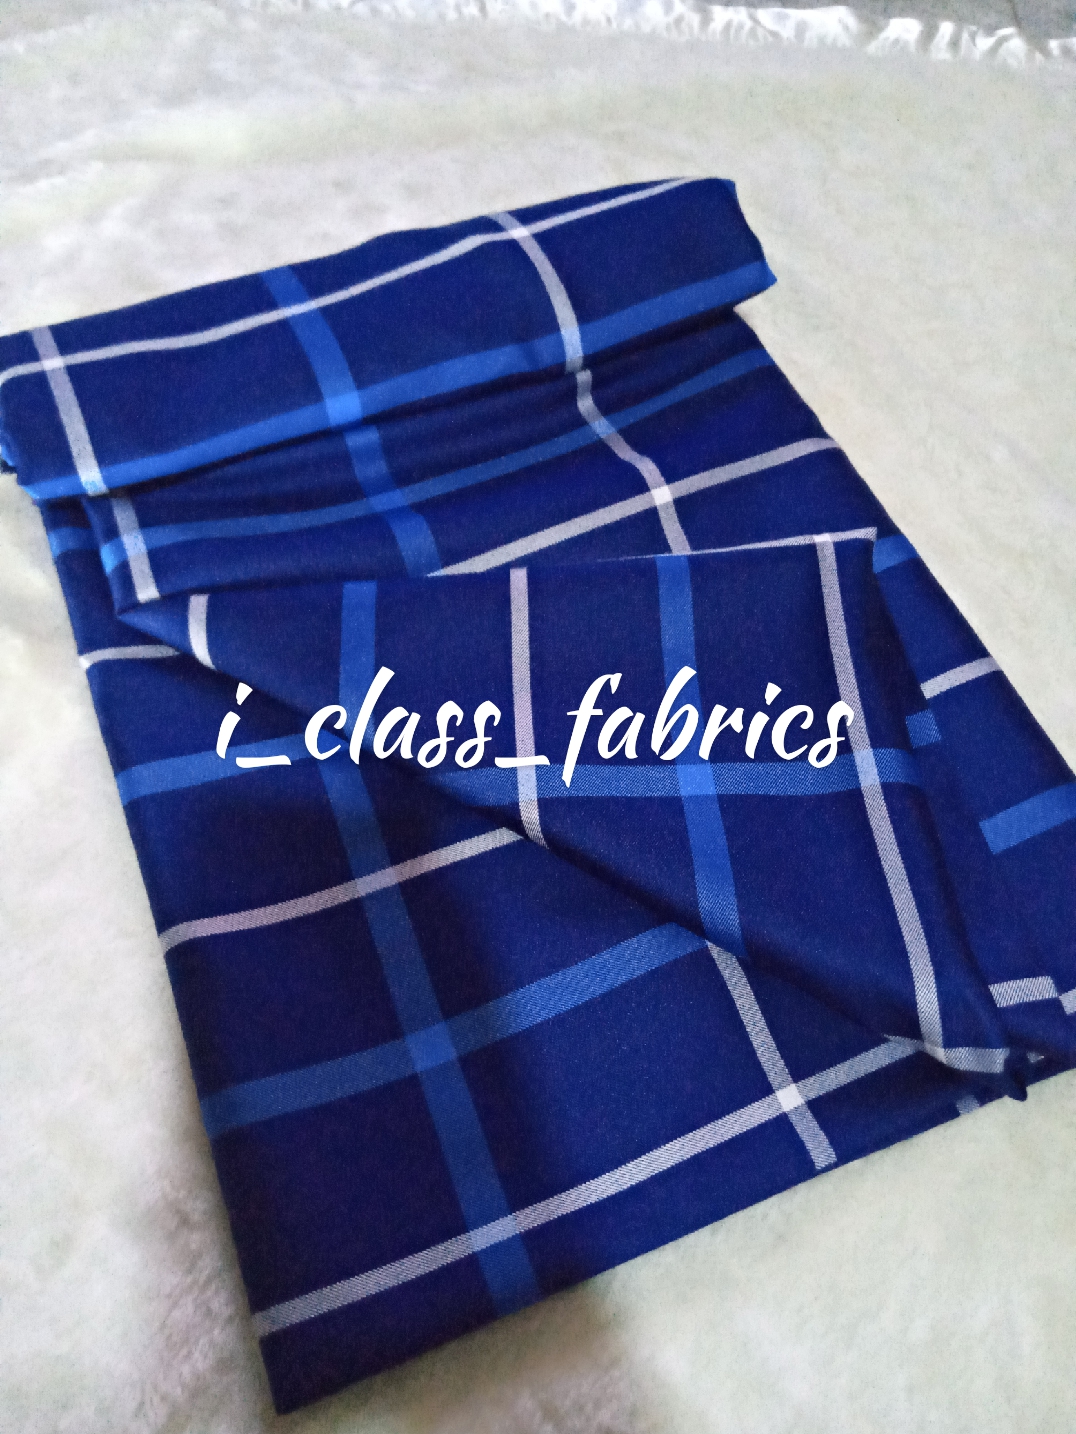 I_class_fabrics provider